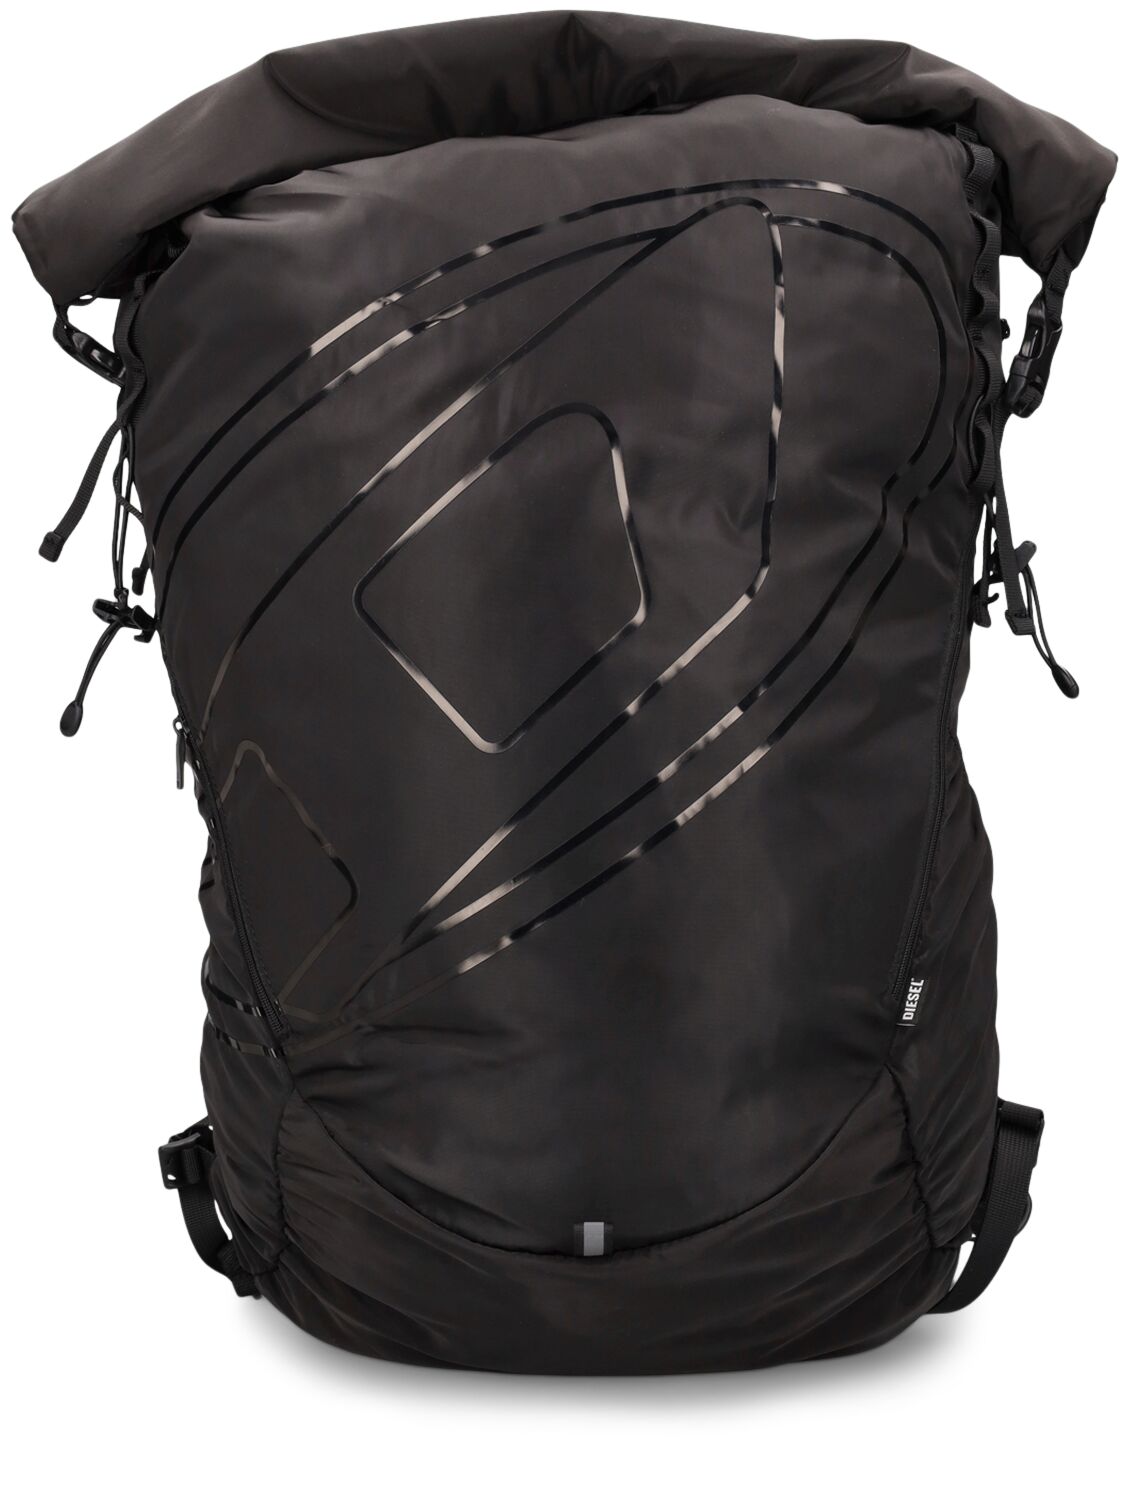 Image of Oval-d Light Nylon Backpack